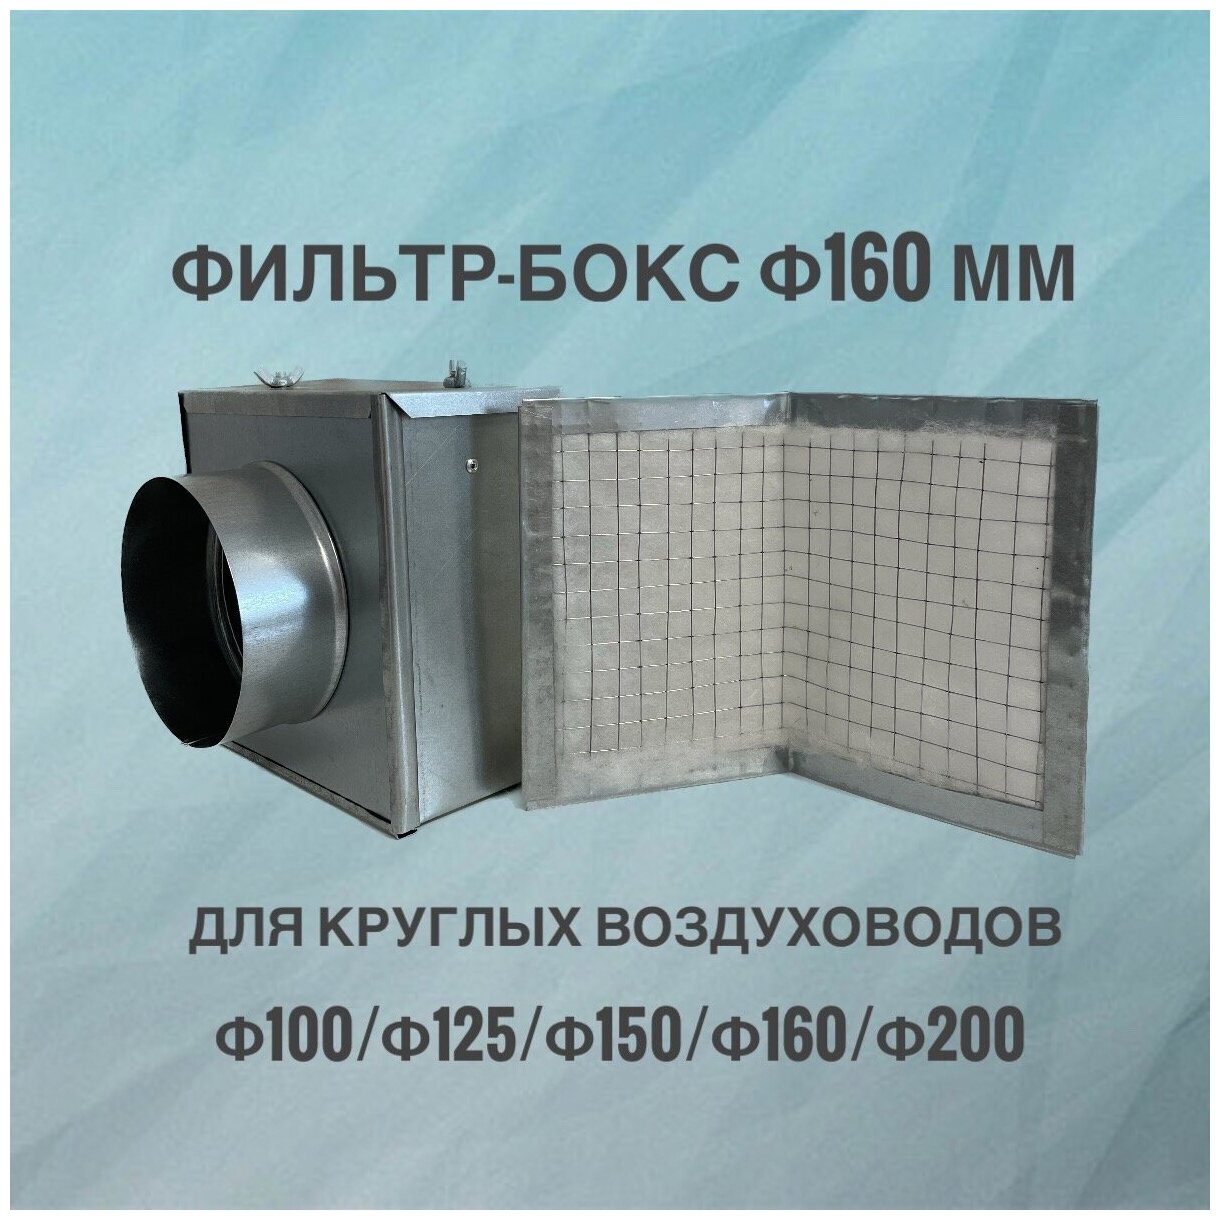 Воздушный фильтр-бокс для круглых воздуховодов воздушный фильтр вентиляционный из оцинкованной стали 160 мм